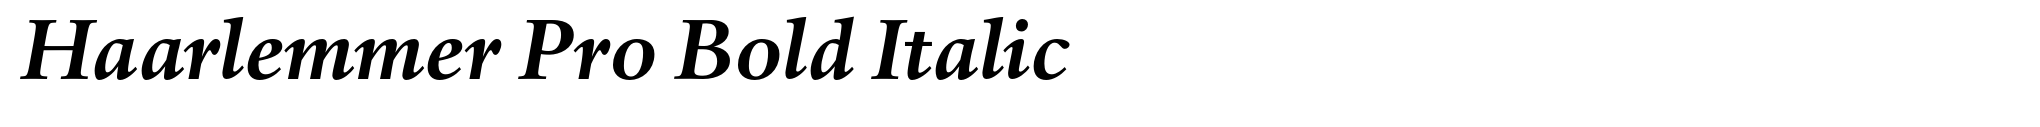 Haarlemmer Pro Bold Italic image